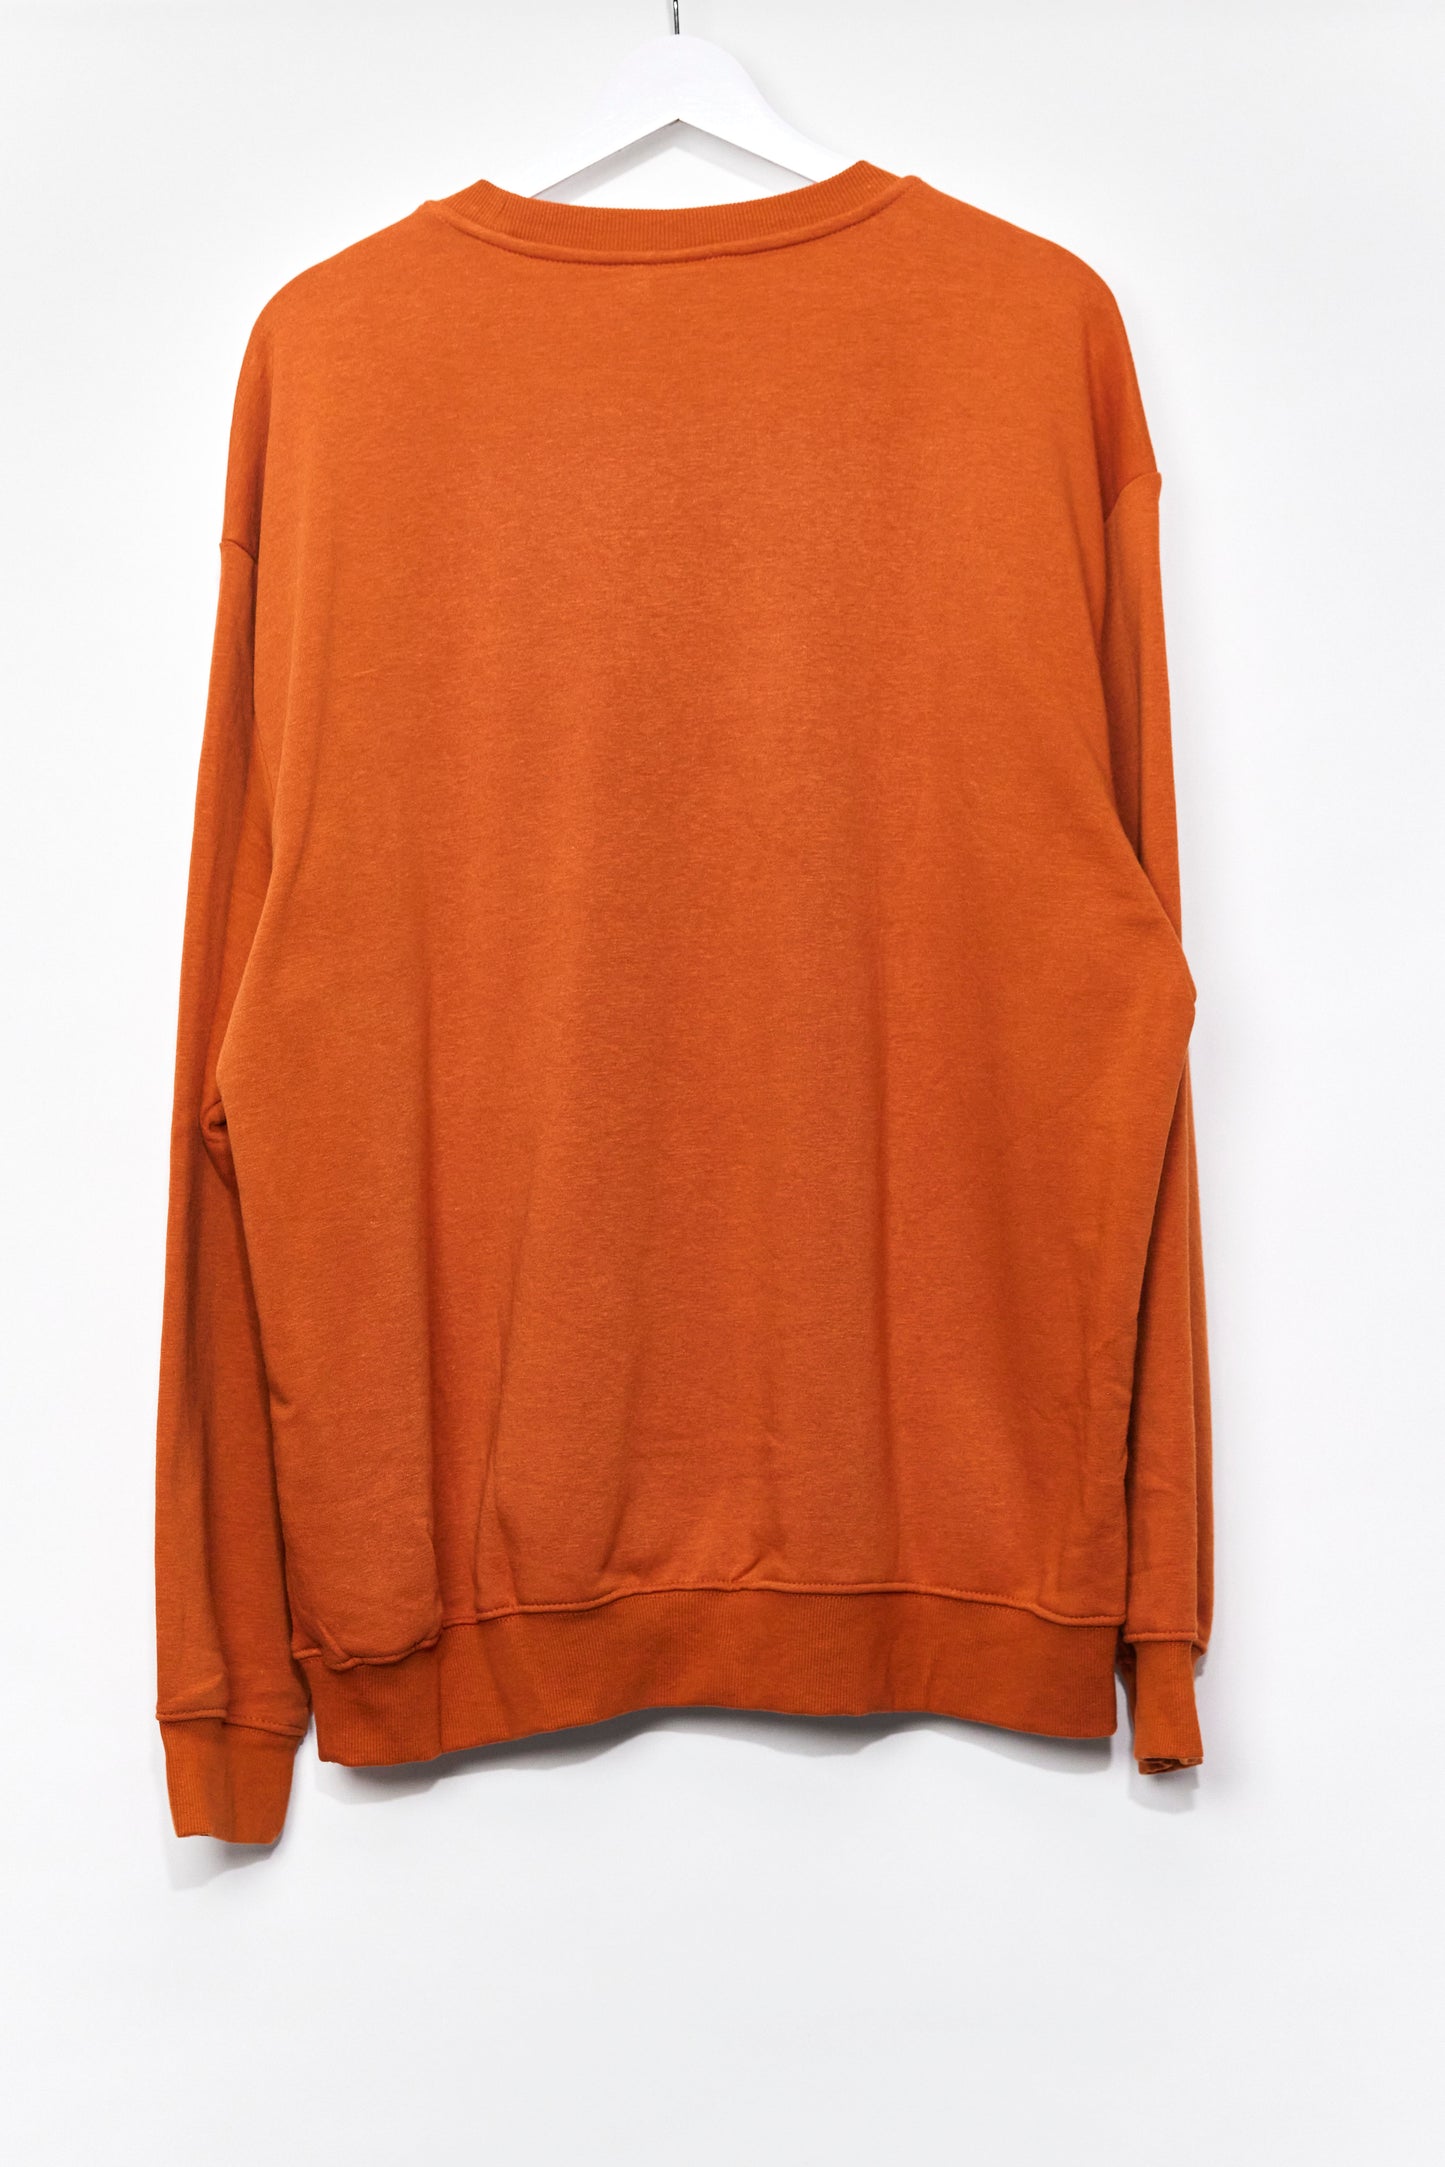 Mens H&M Orange Sweatshirt size Large